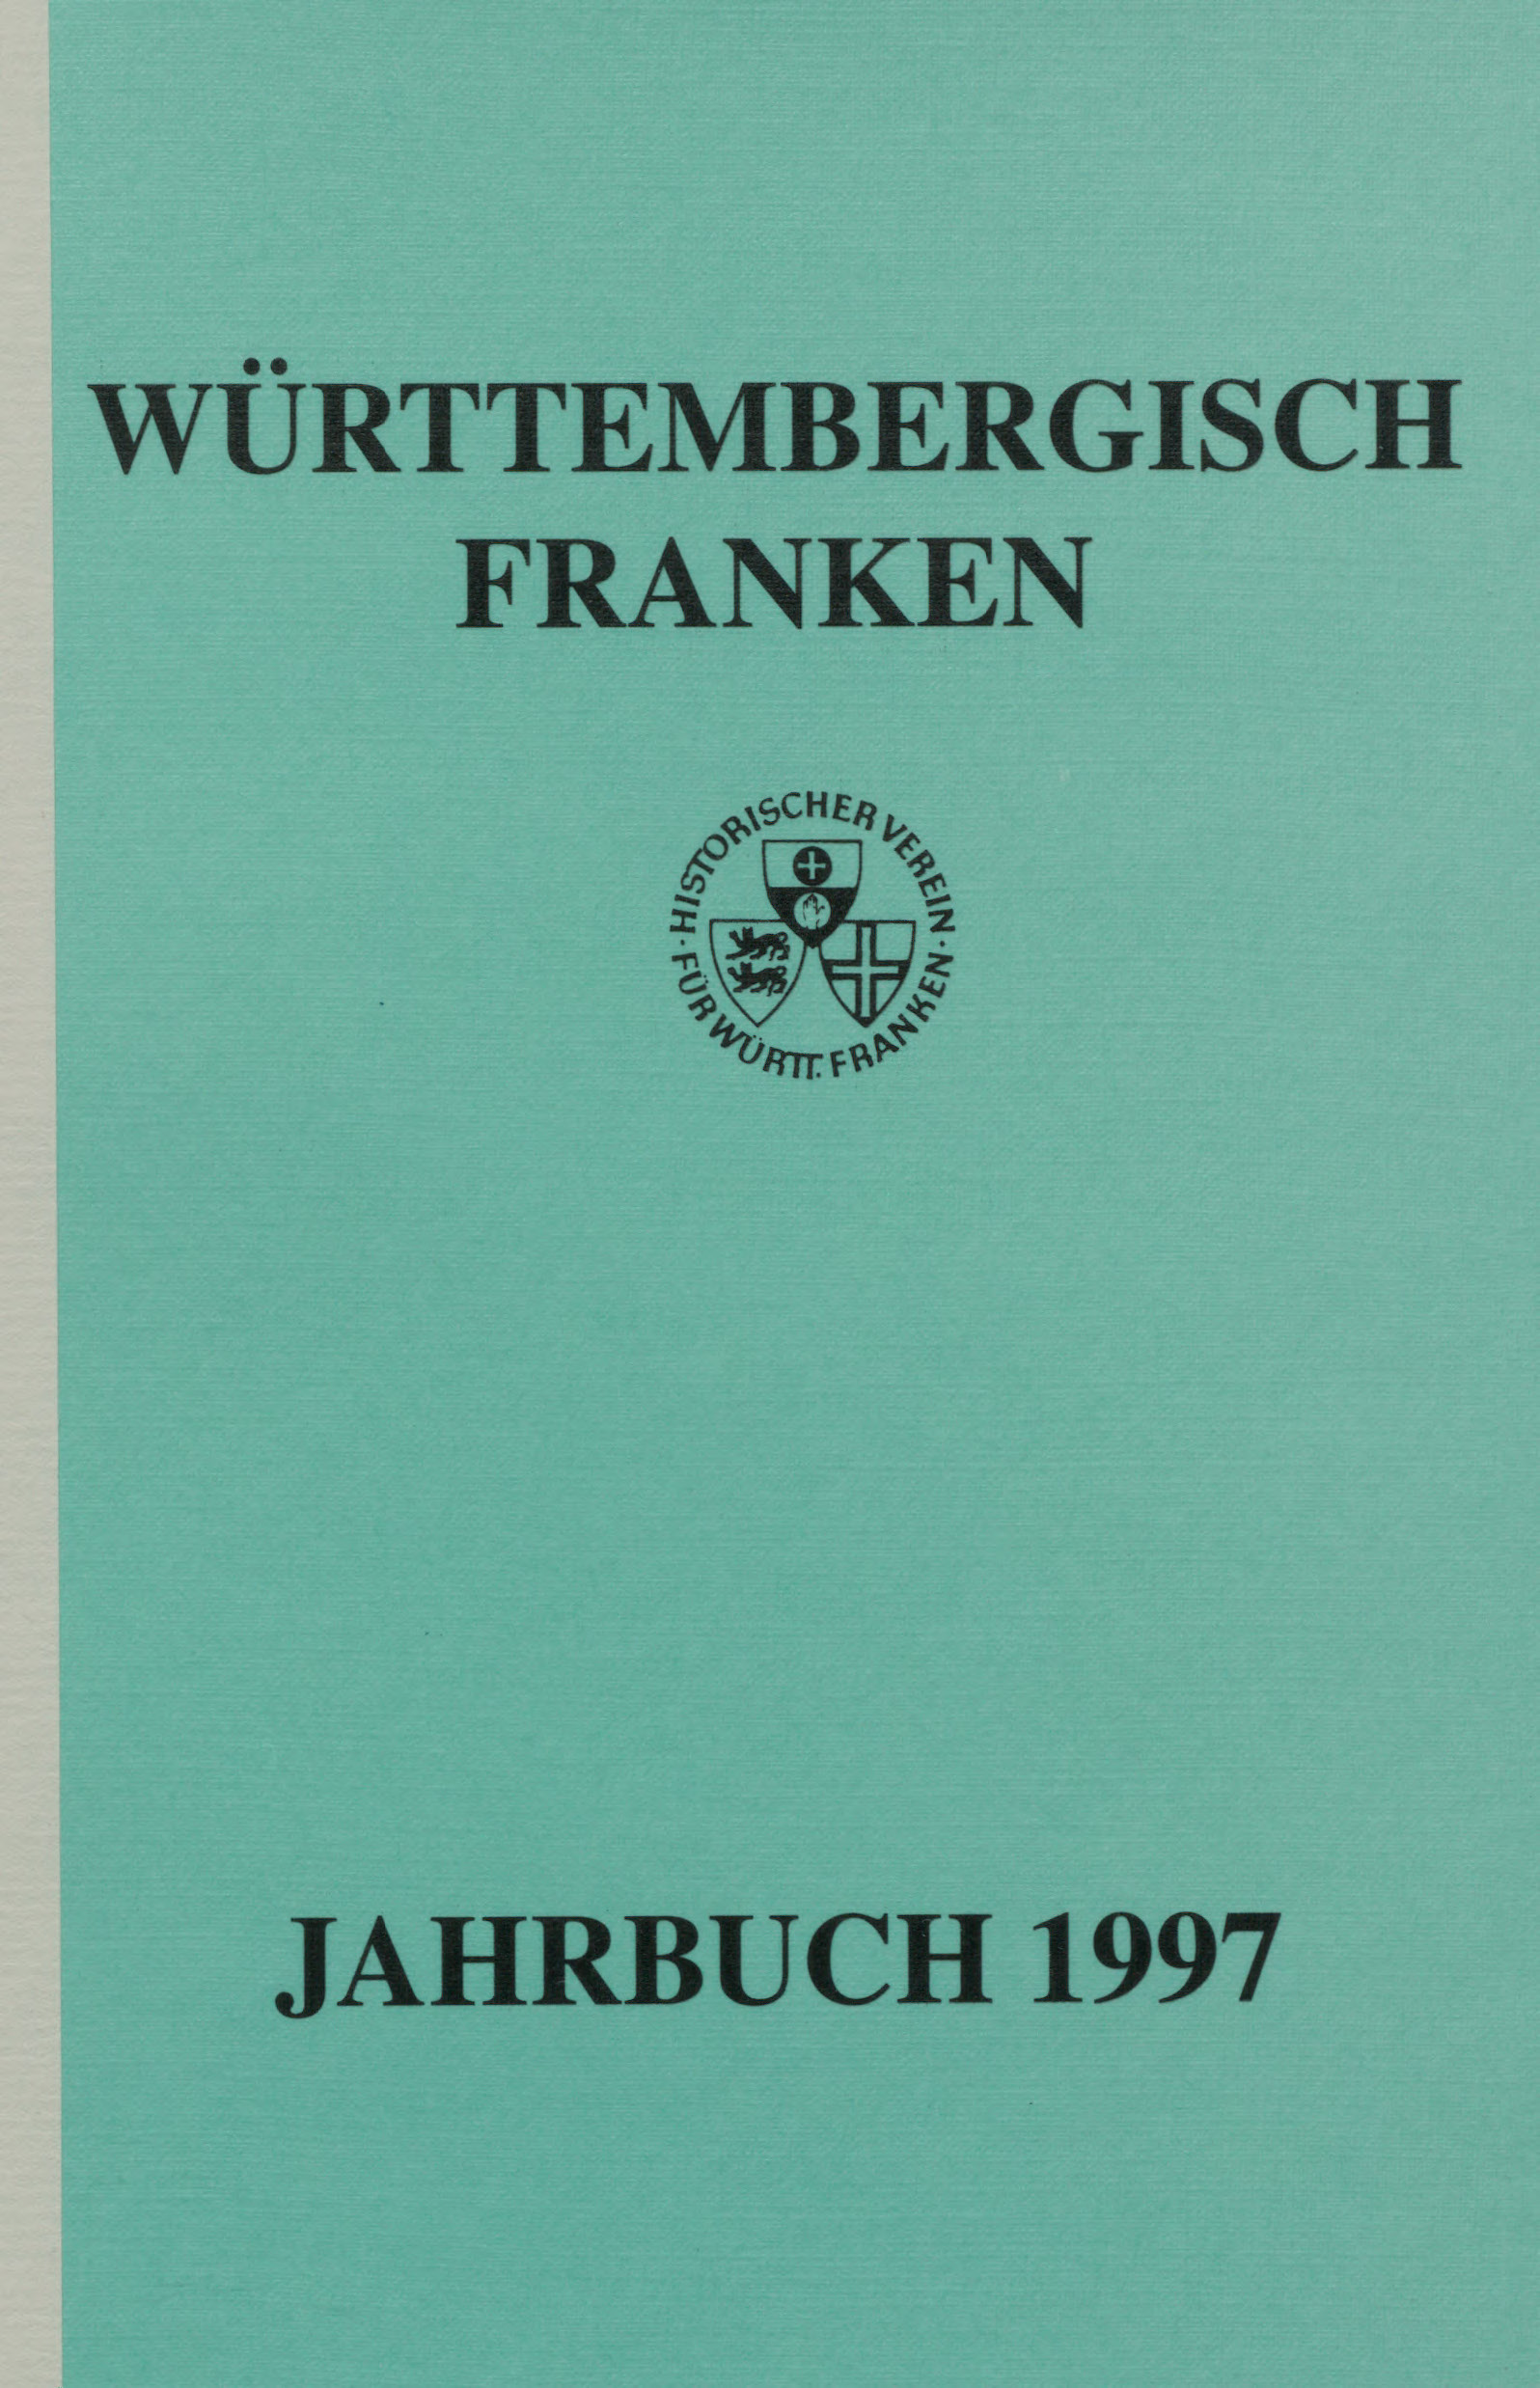                     Ansehen Bd. 81 (1997): Württembergisch Franken
                